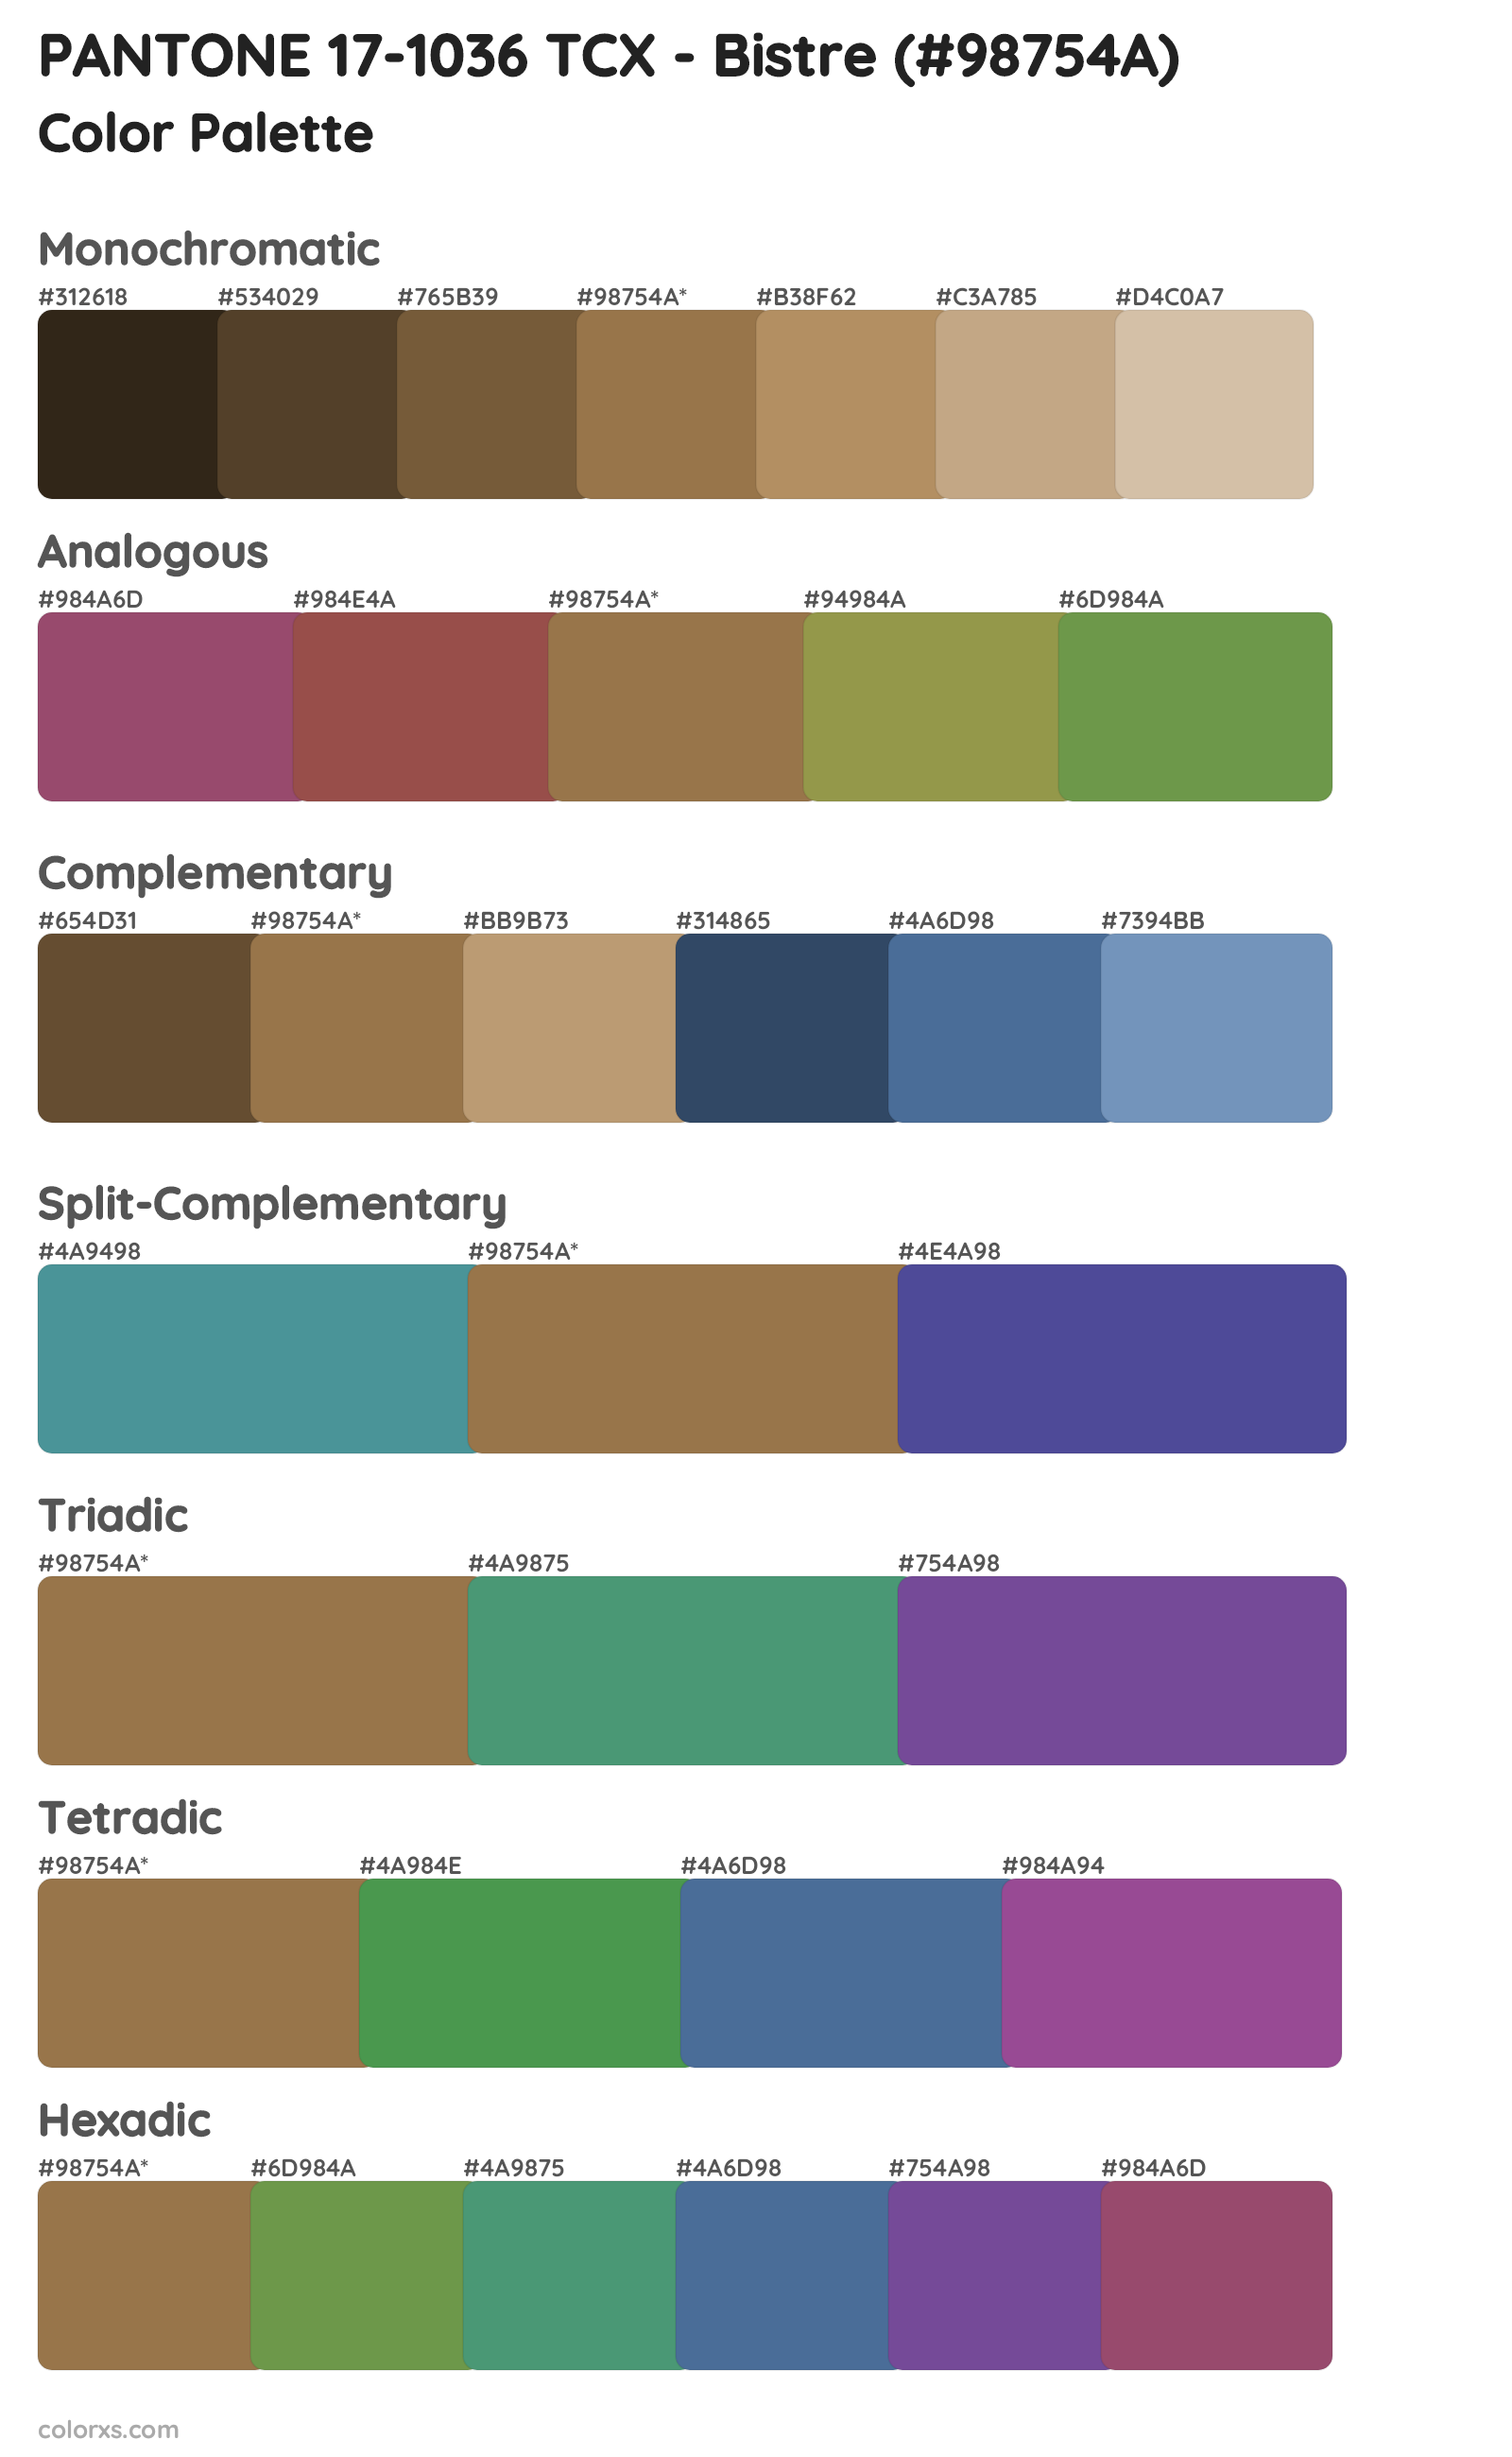 PANTONE 17-1036 TCX - Bistre Color Scheme Palettes